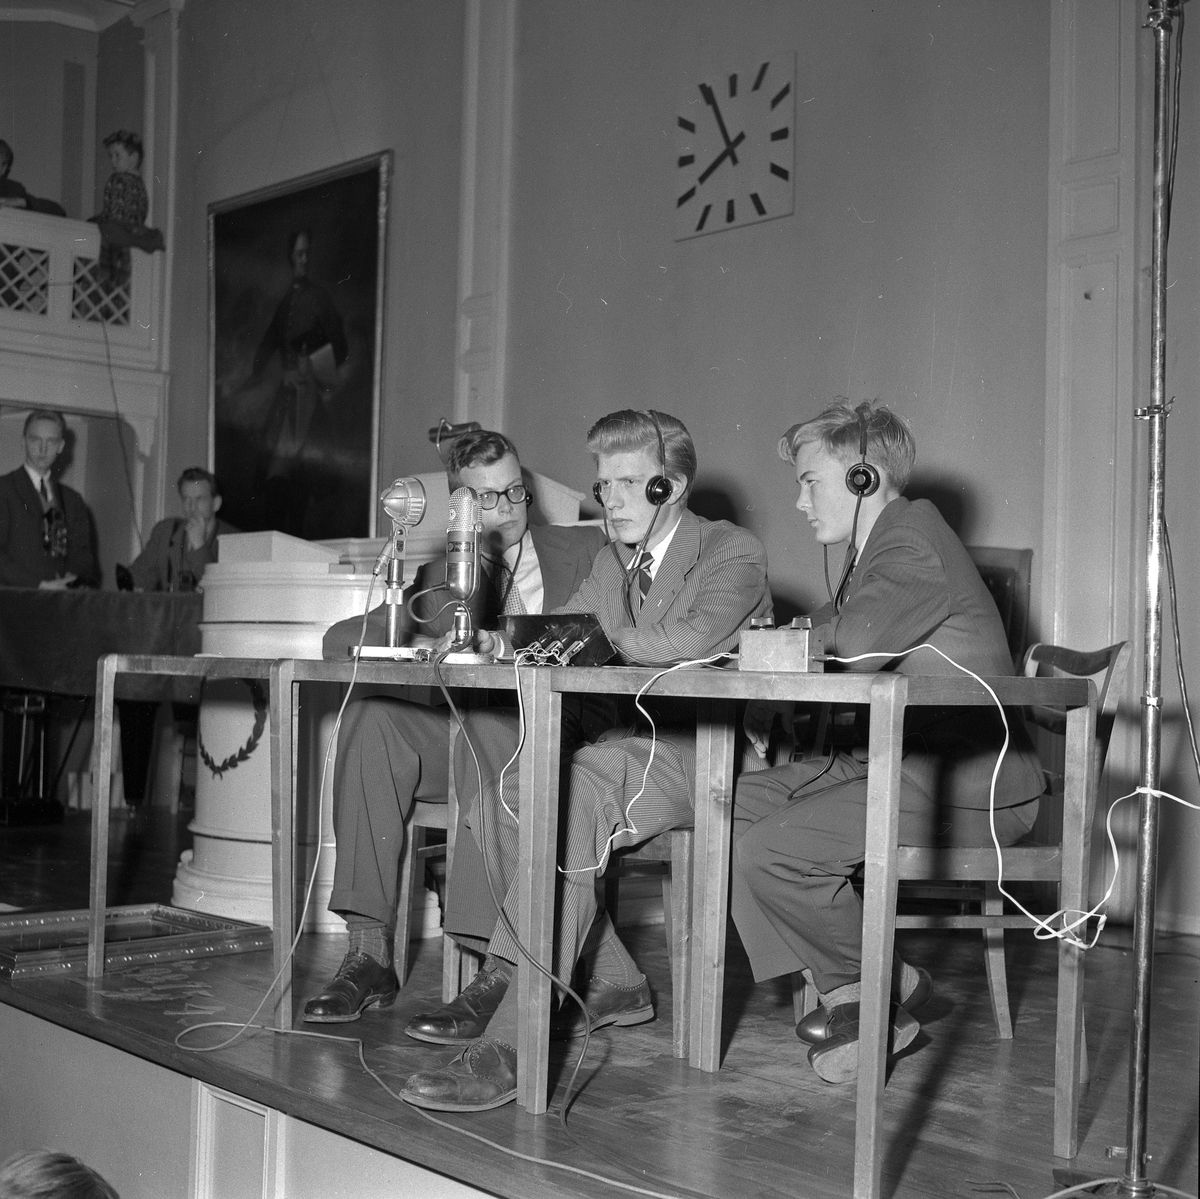 Karro segrar i radiotävling.
November 1956.